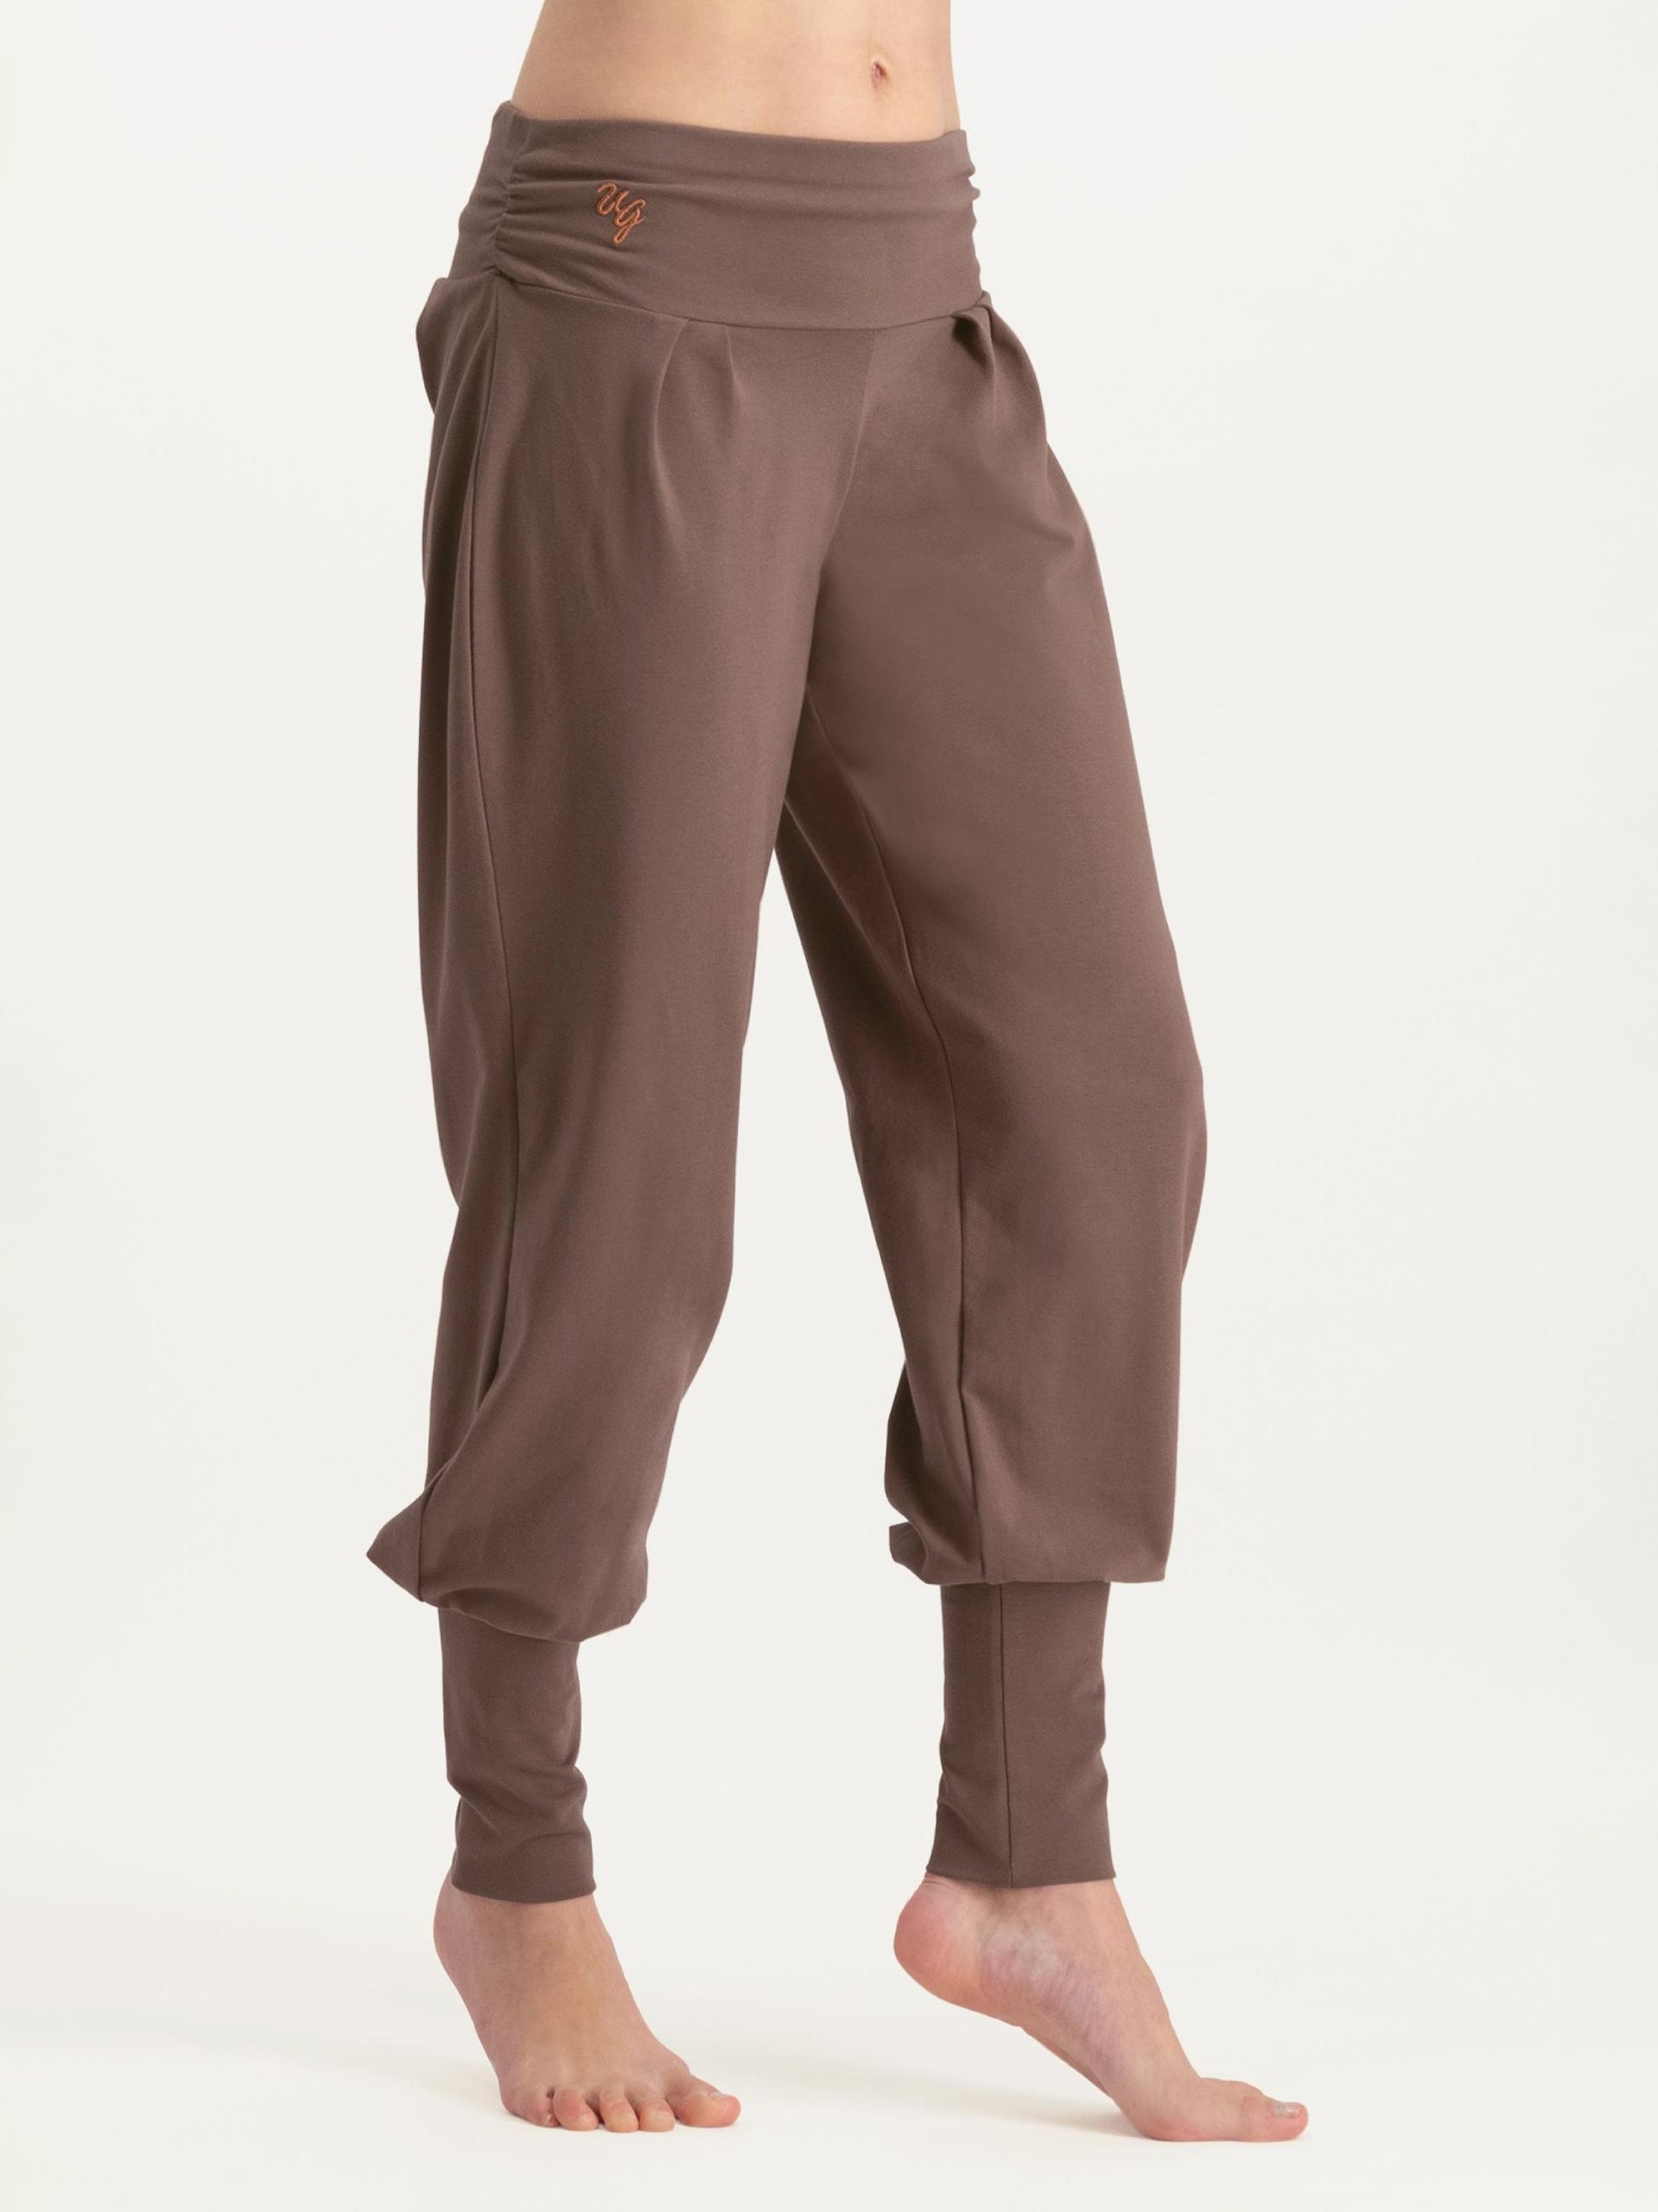 Jahrioiu 100% Cotton Yoga Pants Women Petite Top Leggings Yoga Athletic Workout  Pants Women Fitness Crop Sport Camouflage Pants : : Clothing,  Shoes & Accessories